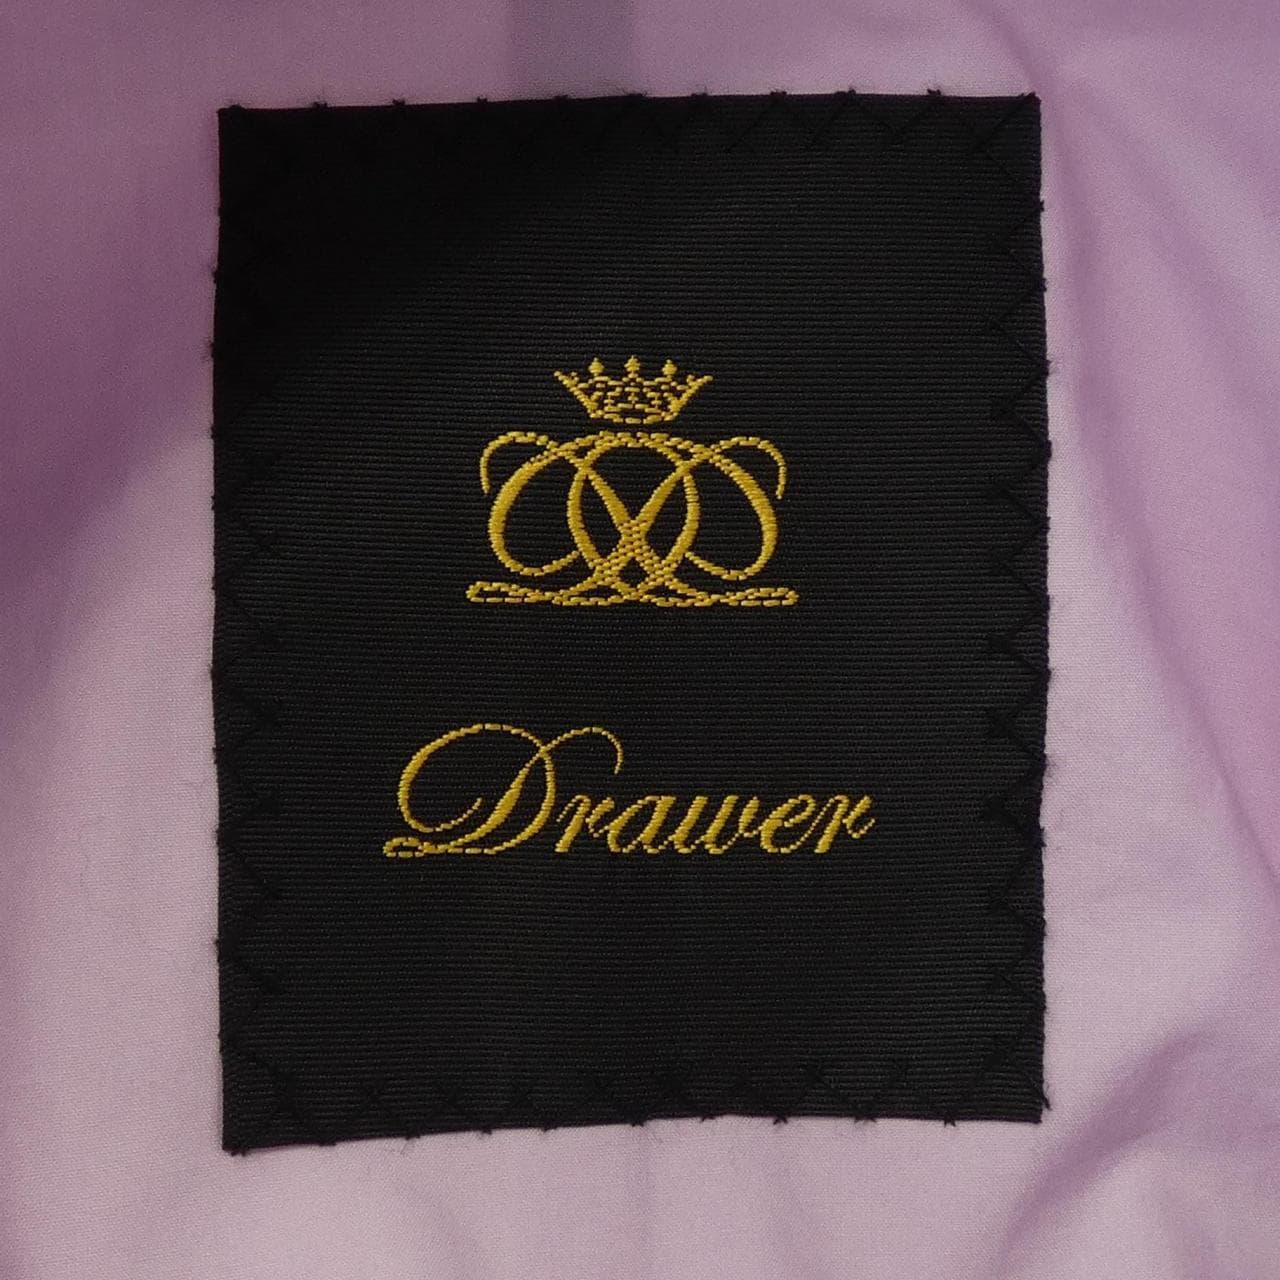 DRAWER jacket